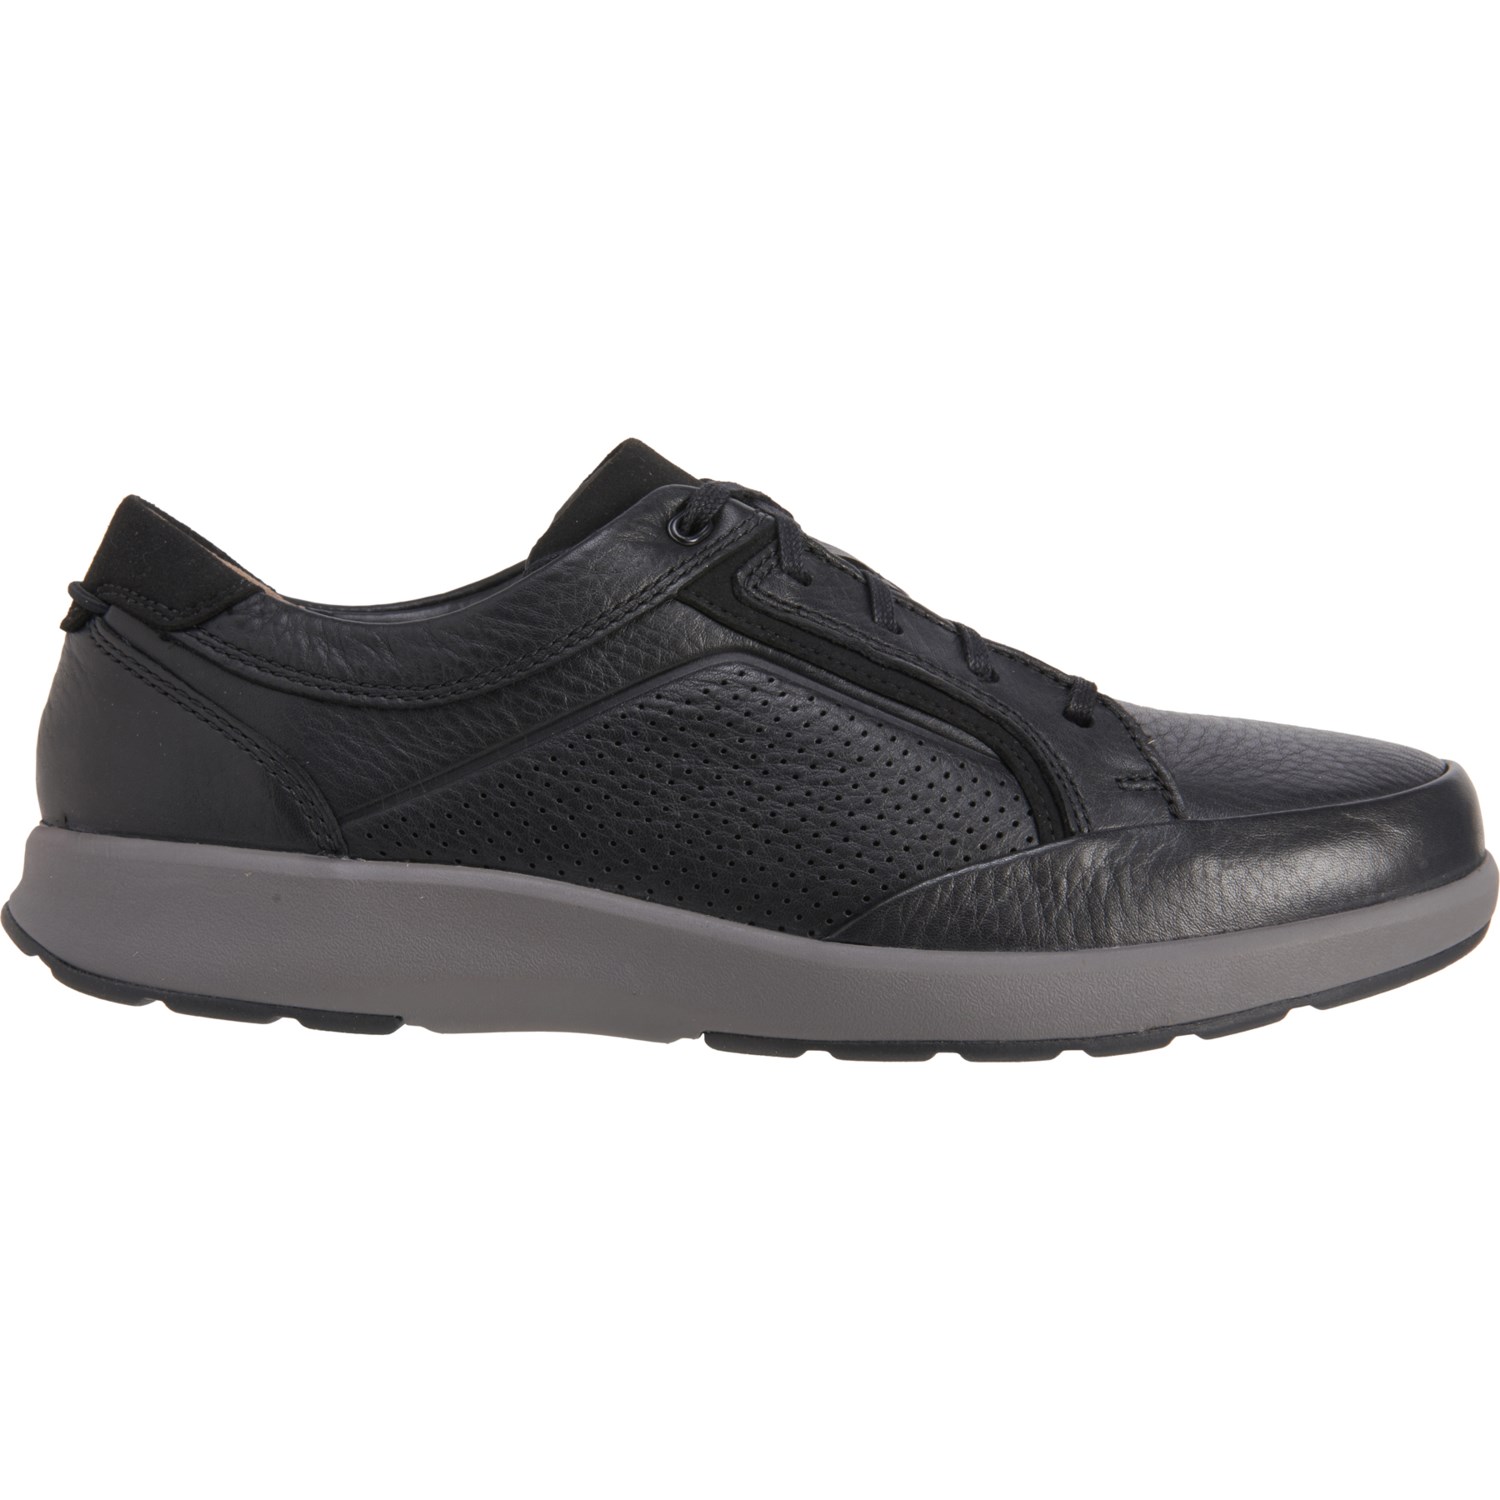 Clarks Un Trail Form Shoes (For Men) - Save 38%